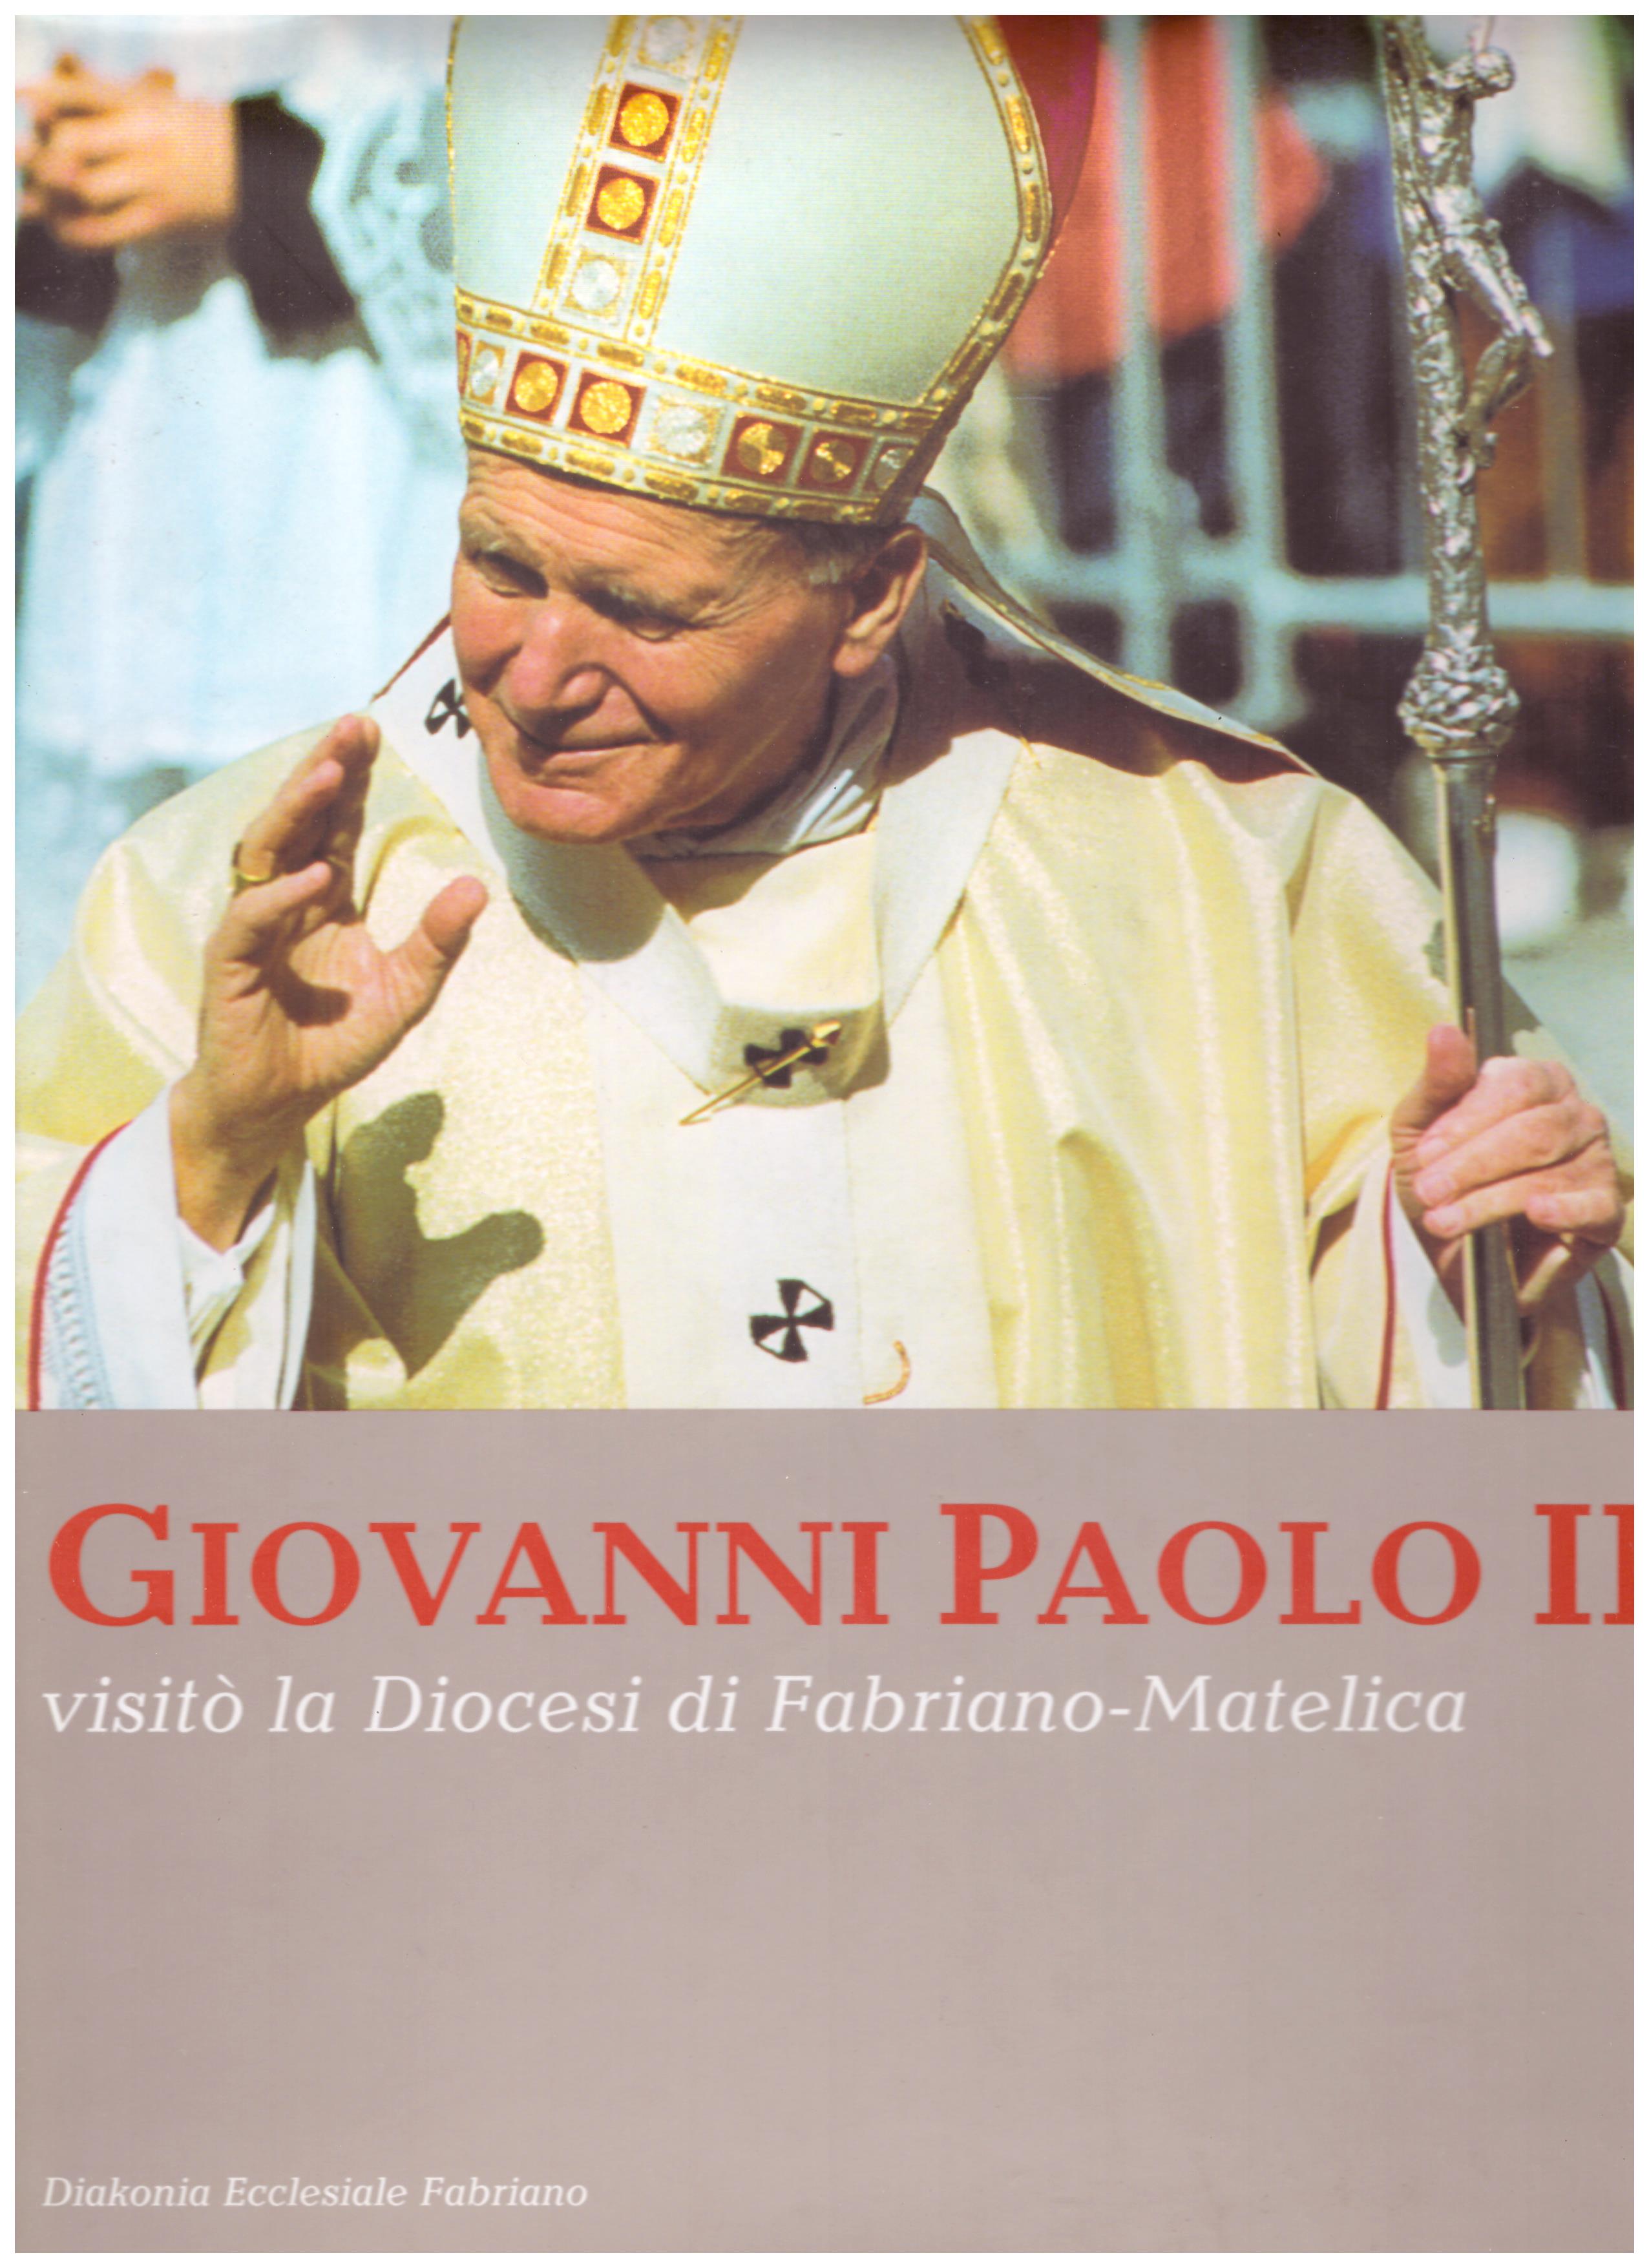 Titolo: Giovanni Paolo II visitò la diocesi di Fabriano-Matelica  Autore: AA.VV.   Editore: diakonia ecclesiale Fabriano